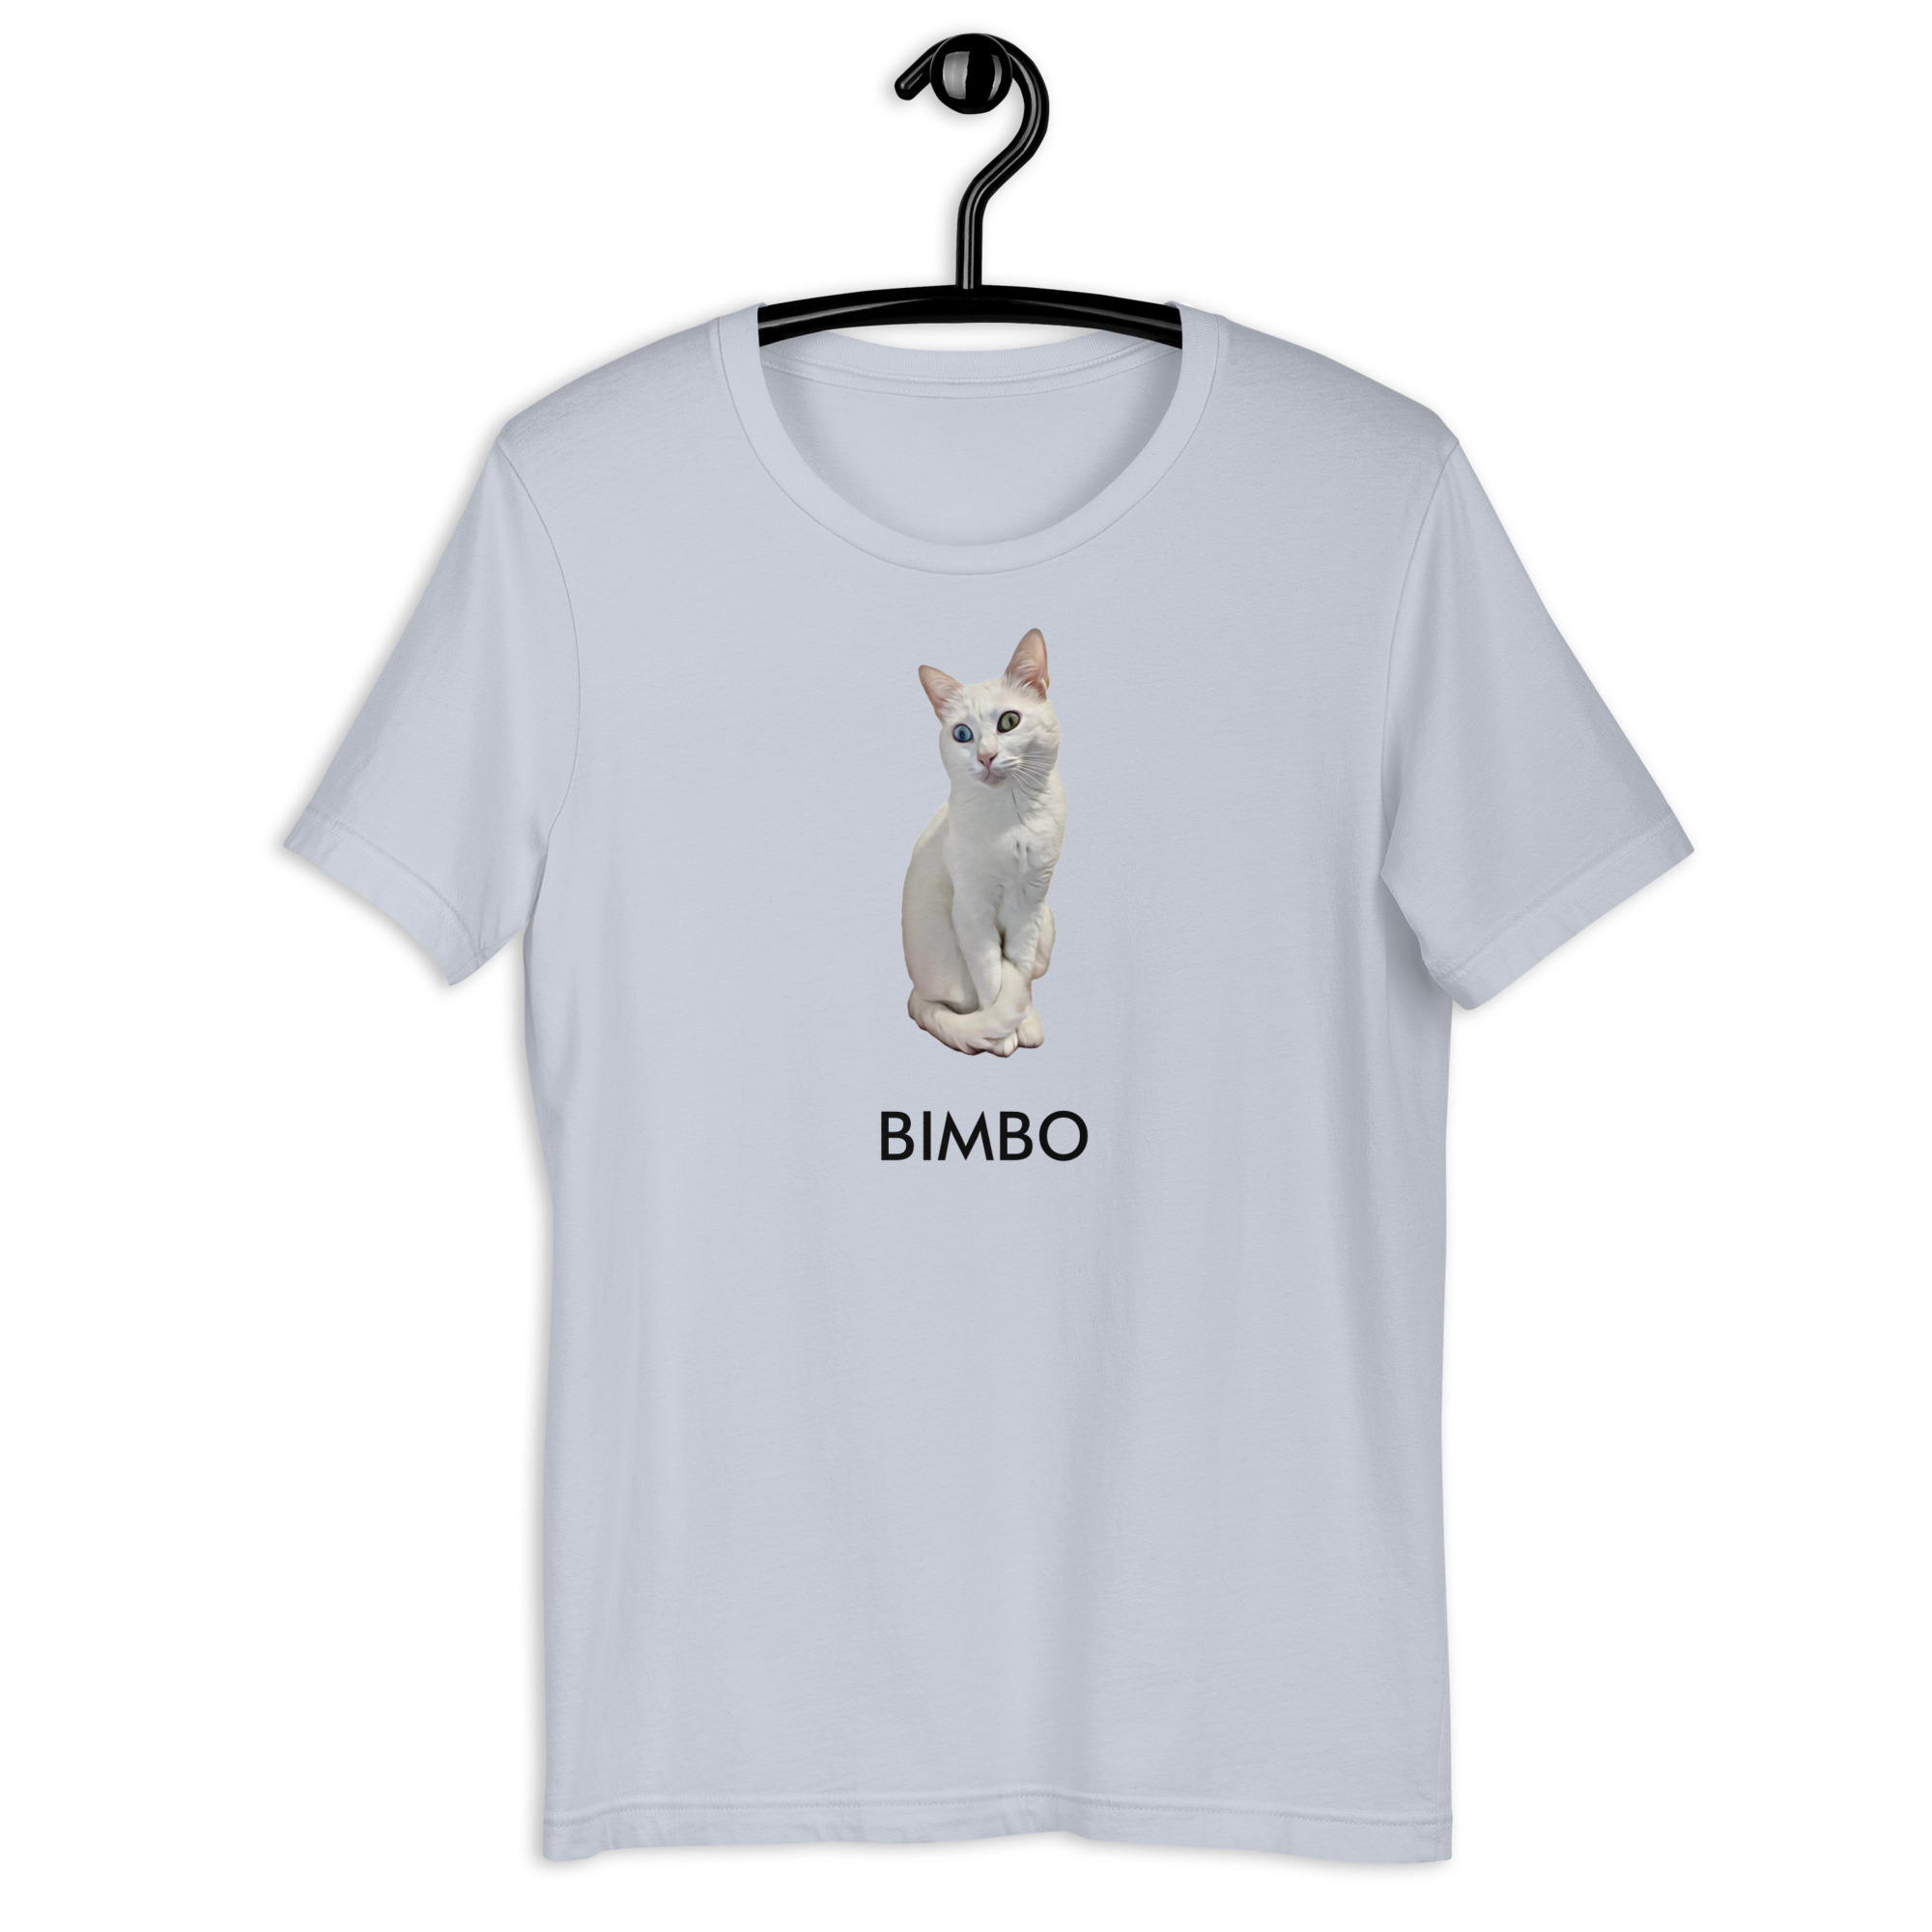 PÁLPITO SUBLIME Camiseta Personalizada Gato Colorido 1